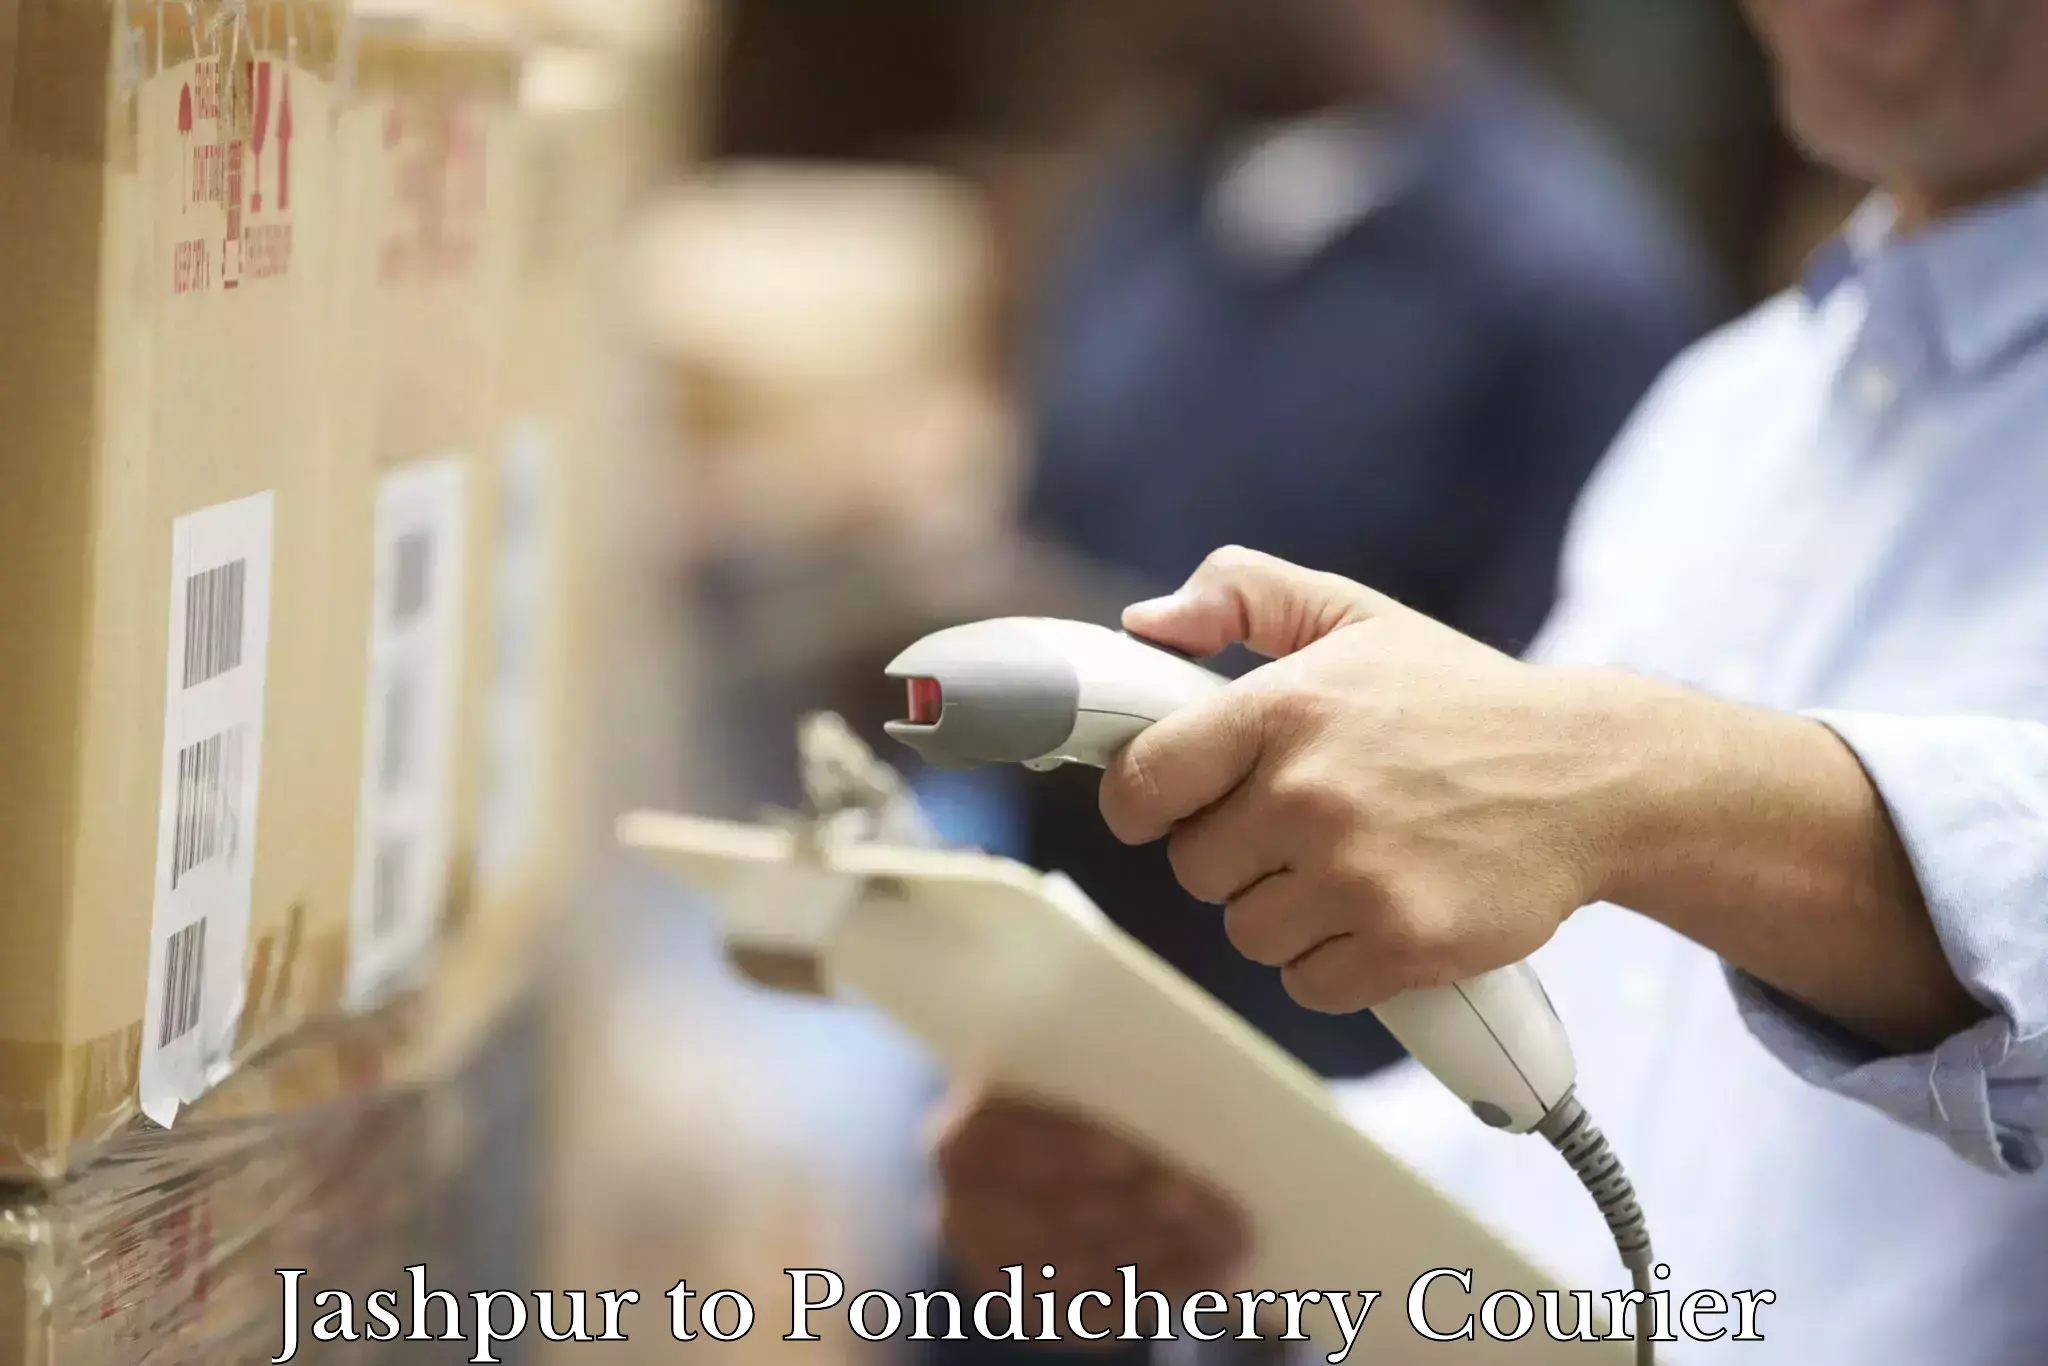 24/7 courier service Jashpur to Pondicherry